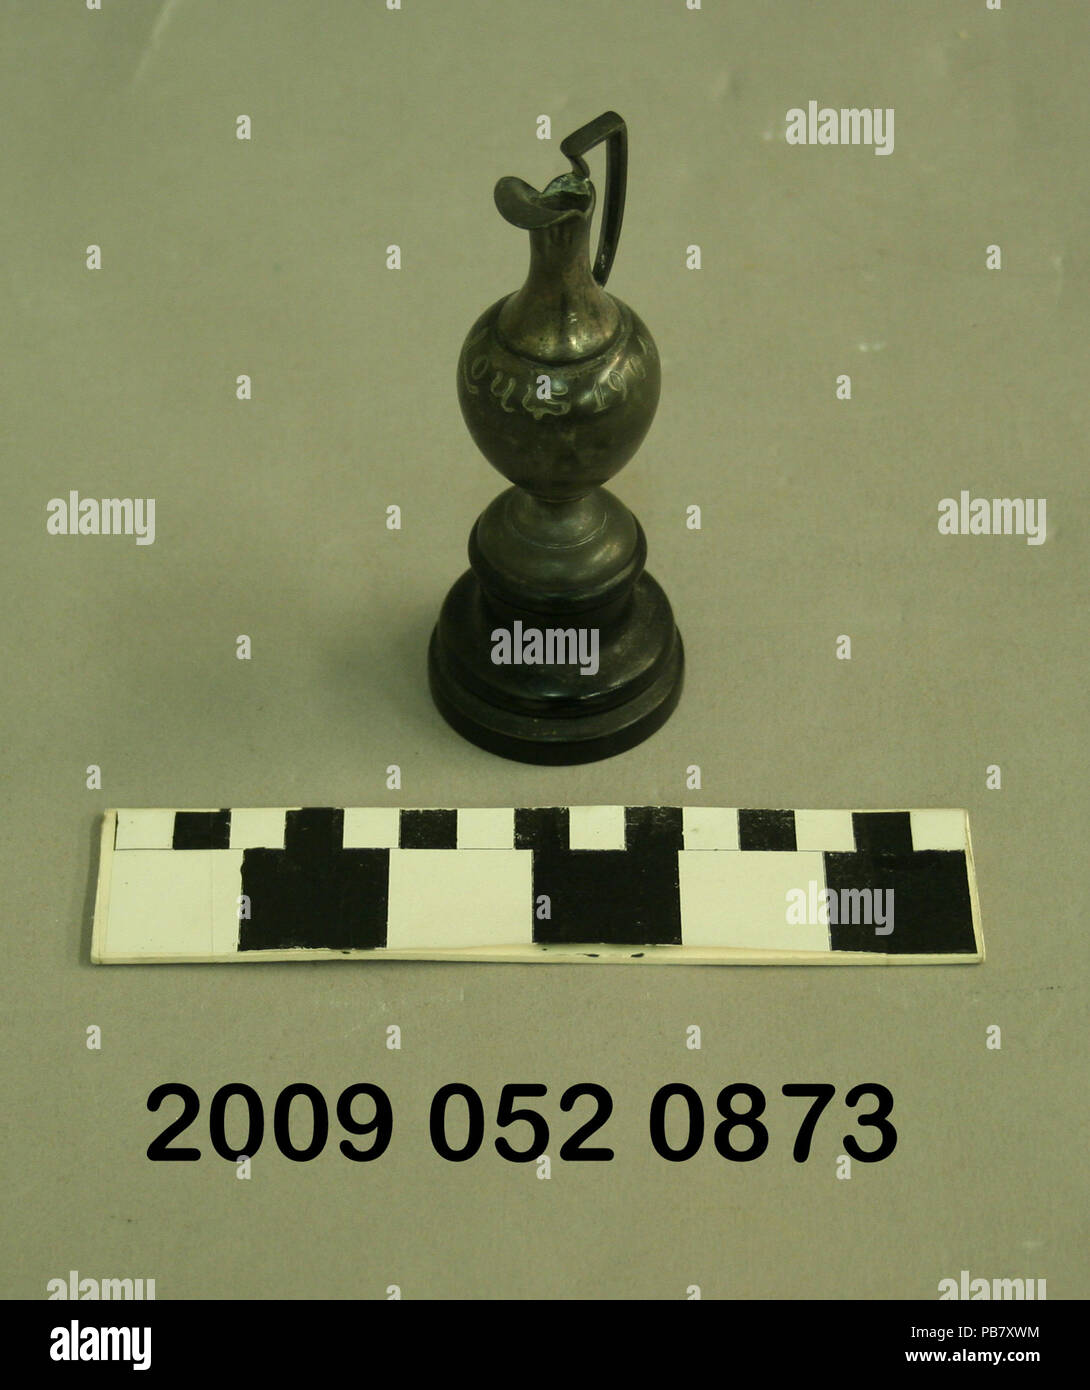 1546 Piccolo argento Trofeo Ewer nero con supporto in legno dal 1904 della fiera del mondo Foto Stock